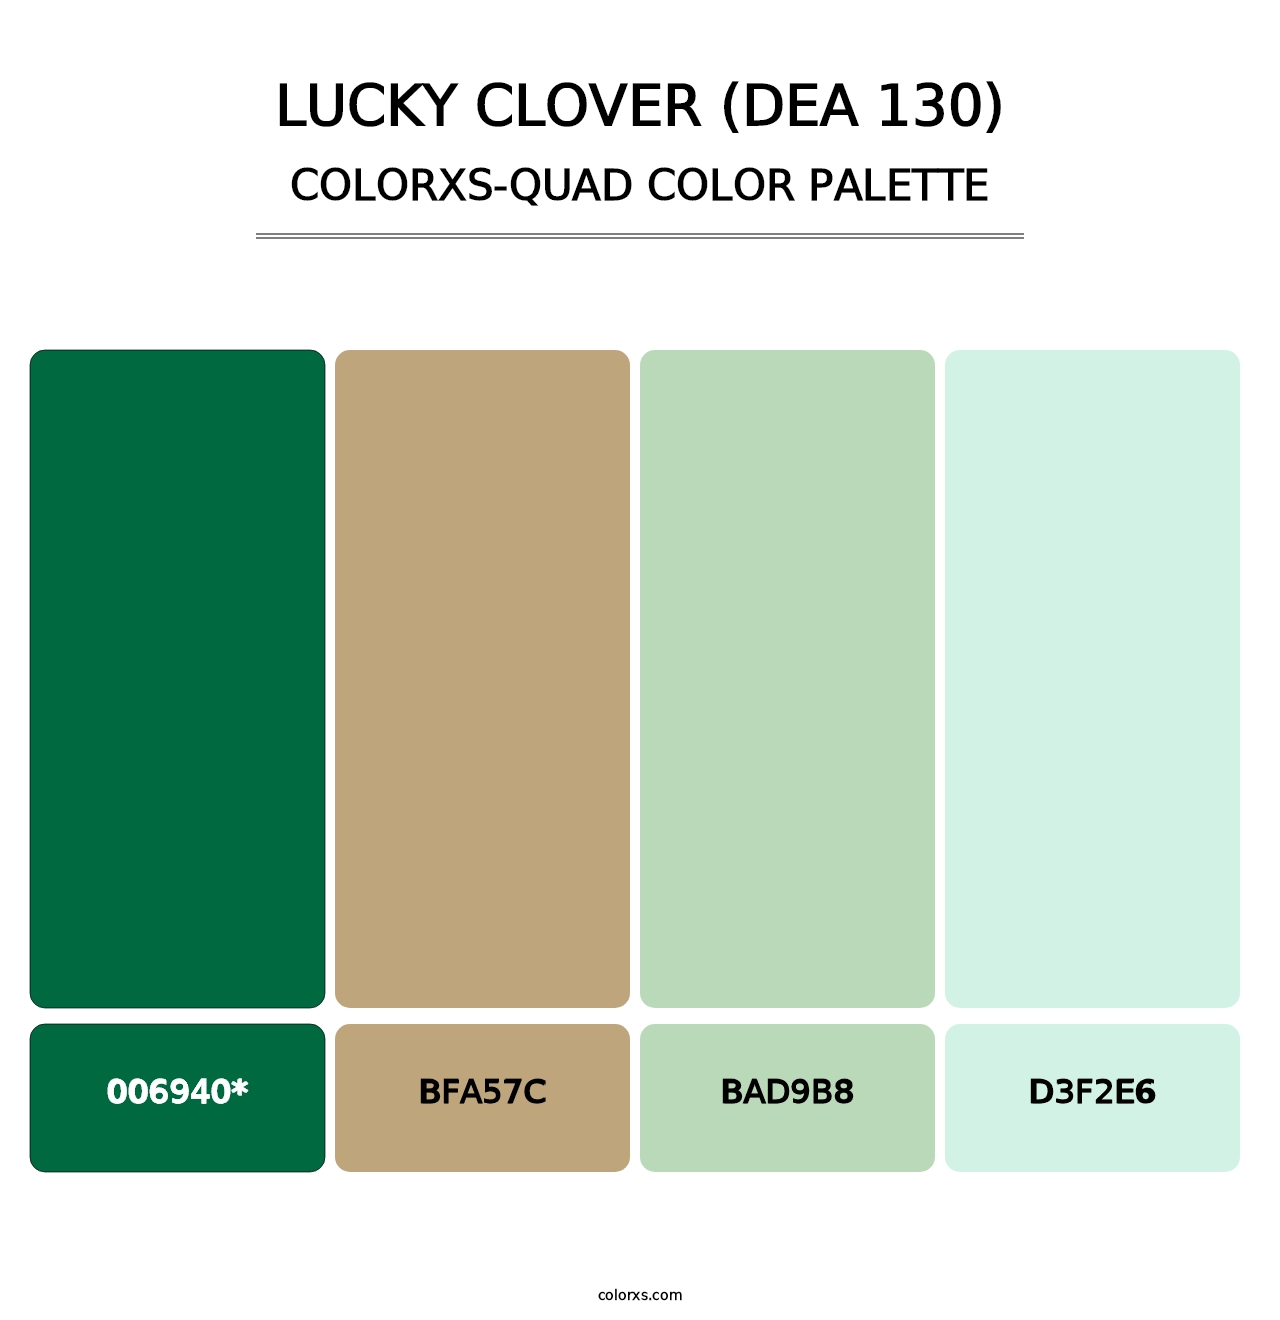 Lucky Clover (DEA 130) - Colorxs Quad Palette